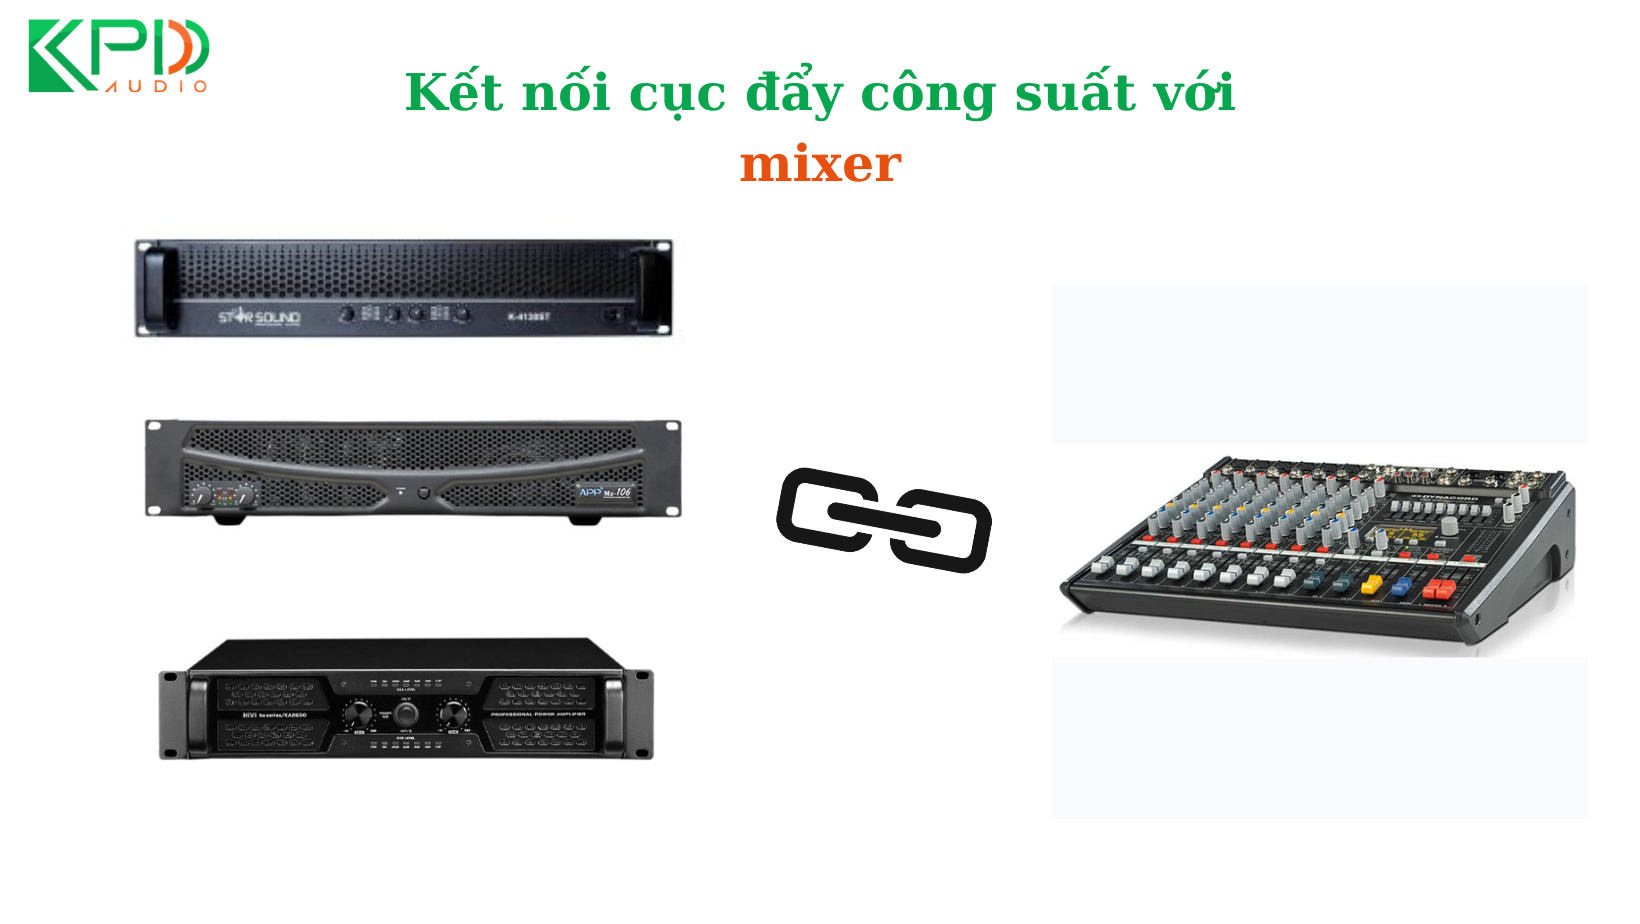  ket-noi-cuc-day-cong-suat-voi-mixer